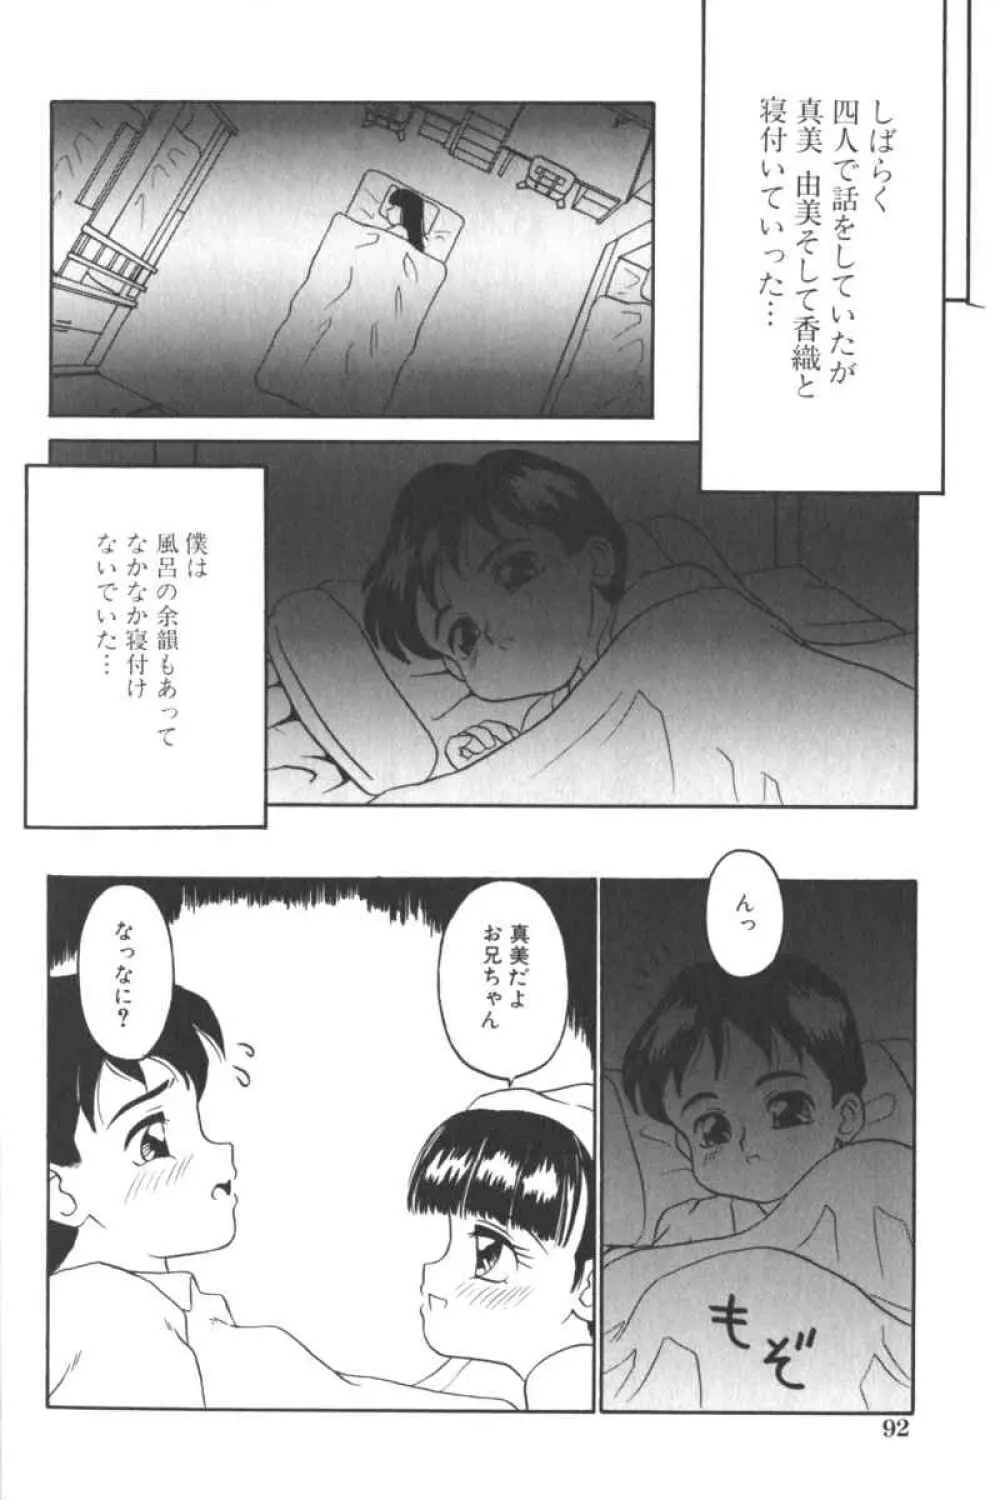 ロリータコミックさくら Vol.6 92ページ